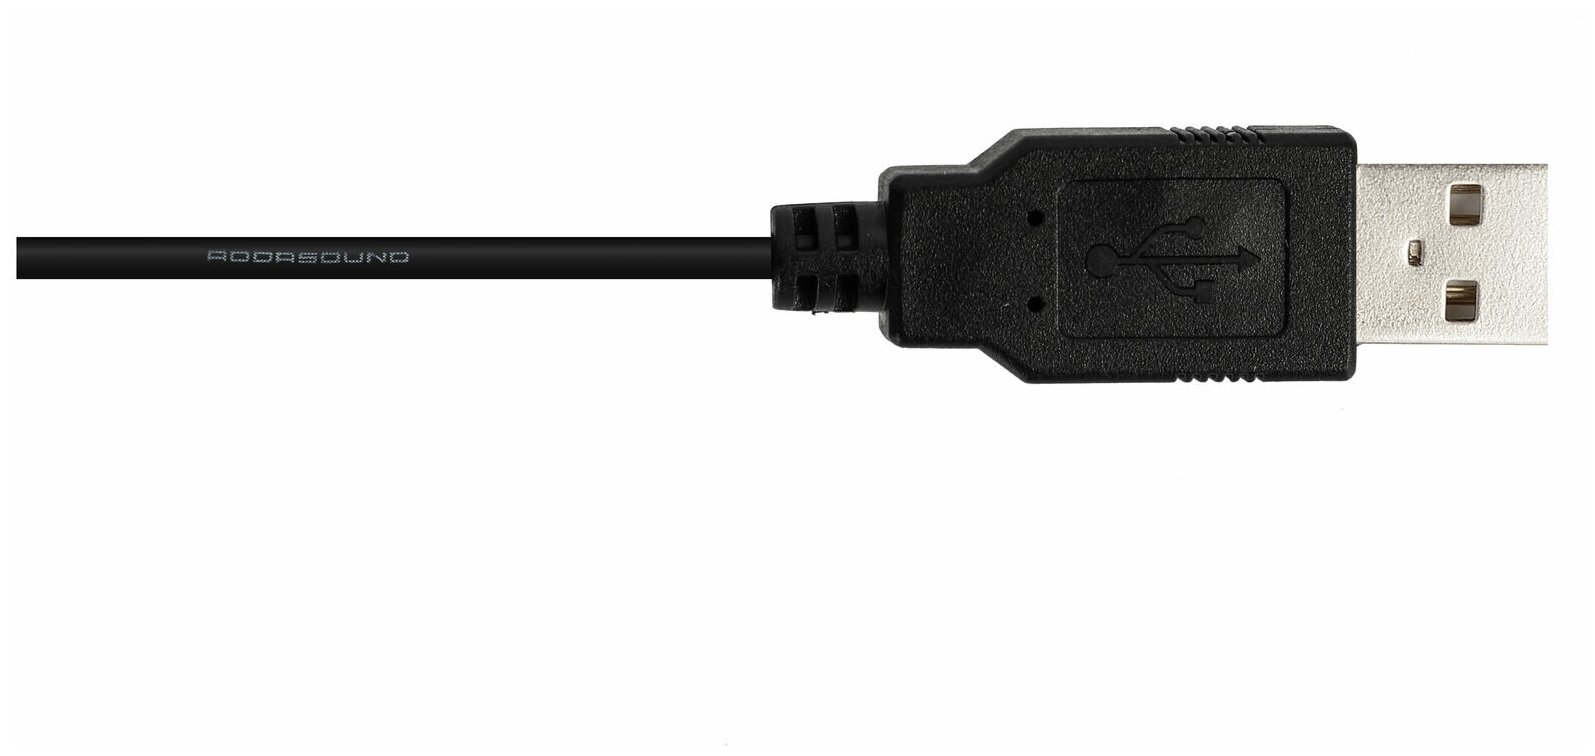 Профессиональные наушники с микрофоном для компьютера ADDASOUND Epic 302, USB-А, шумоподавление, 100% UC совместимость, цвет черно-серый, (ADD-EPIC-302)